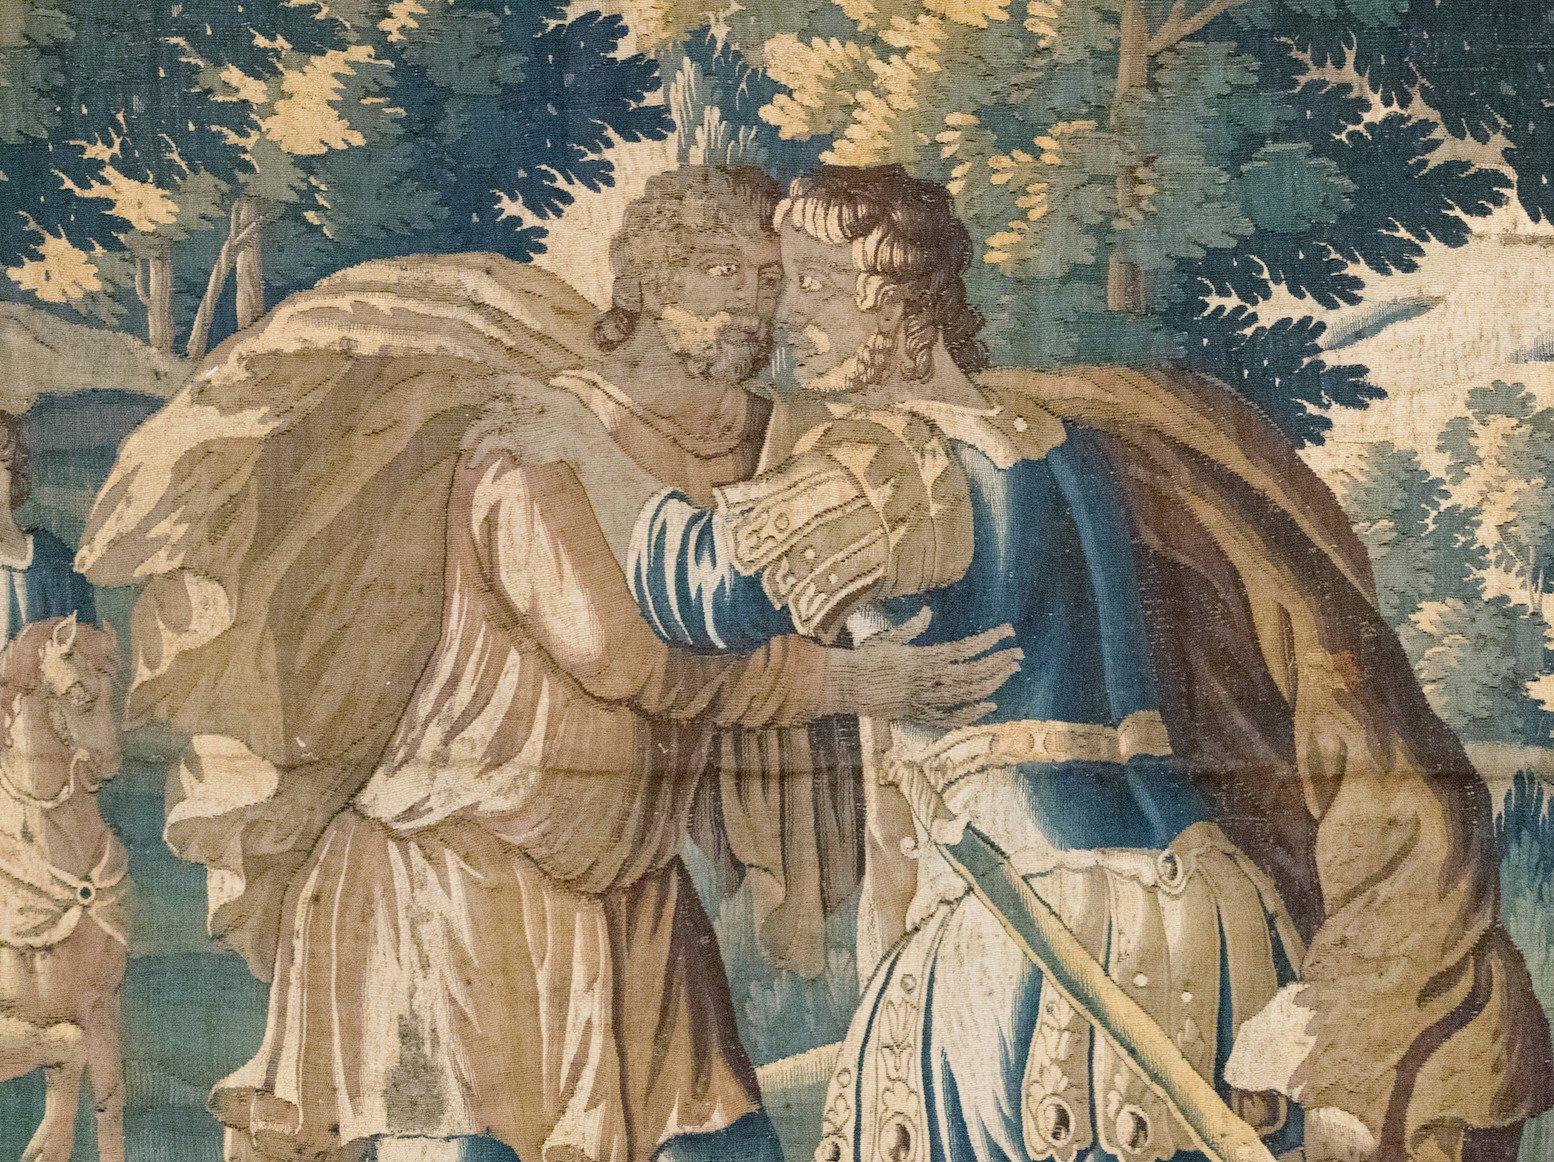 Il s'agit d'une magnifique tapisserie biblique franco-flamande de la fin du XVIIe siècle représentant la réconciliation de Jacob et d'Ésaü. La tapisserie illustre l'histoire de l'Ancien Testament où Jacob fait la paix avec son frère jumeau Ésaü, de